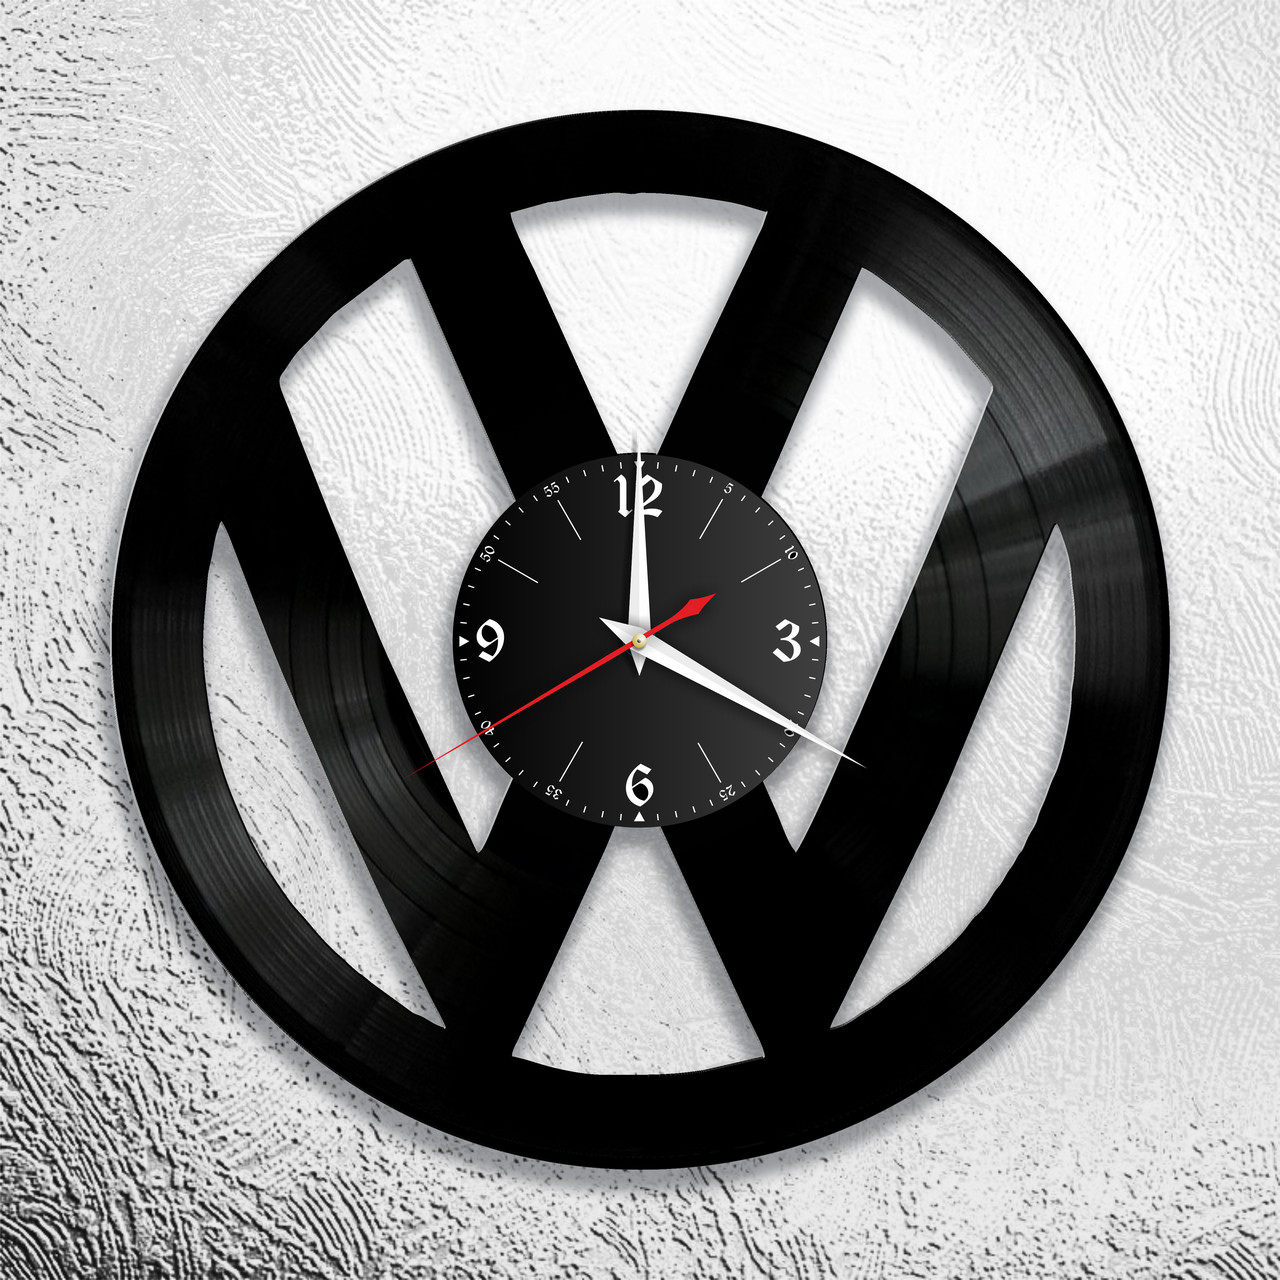 Оригинальные часы из виниловых пластинок  "Volkswagen " версия 1, фото 1